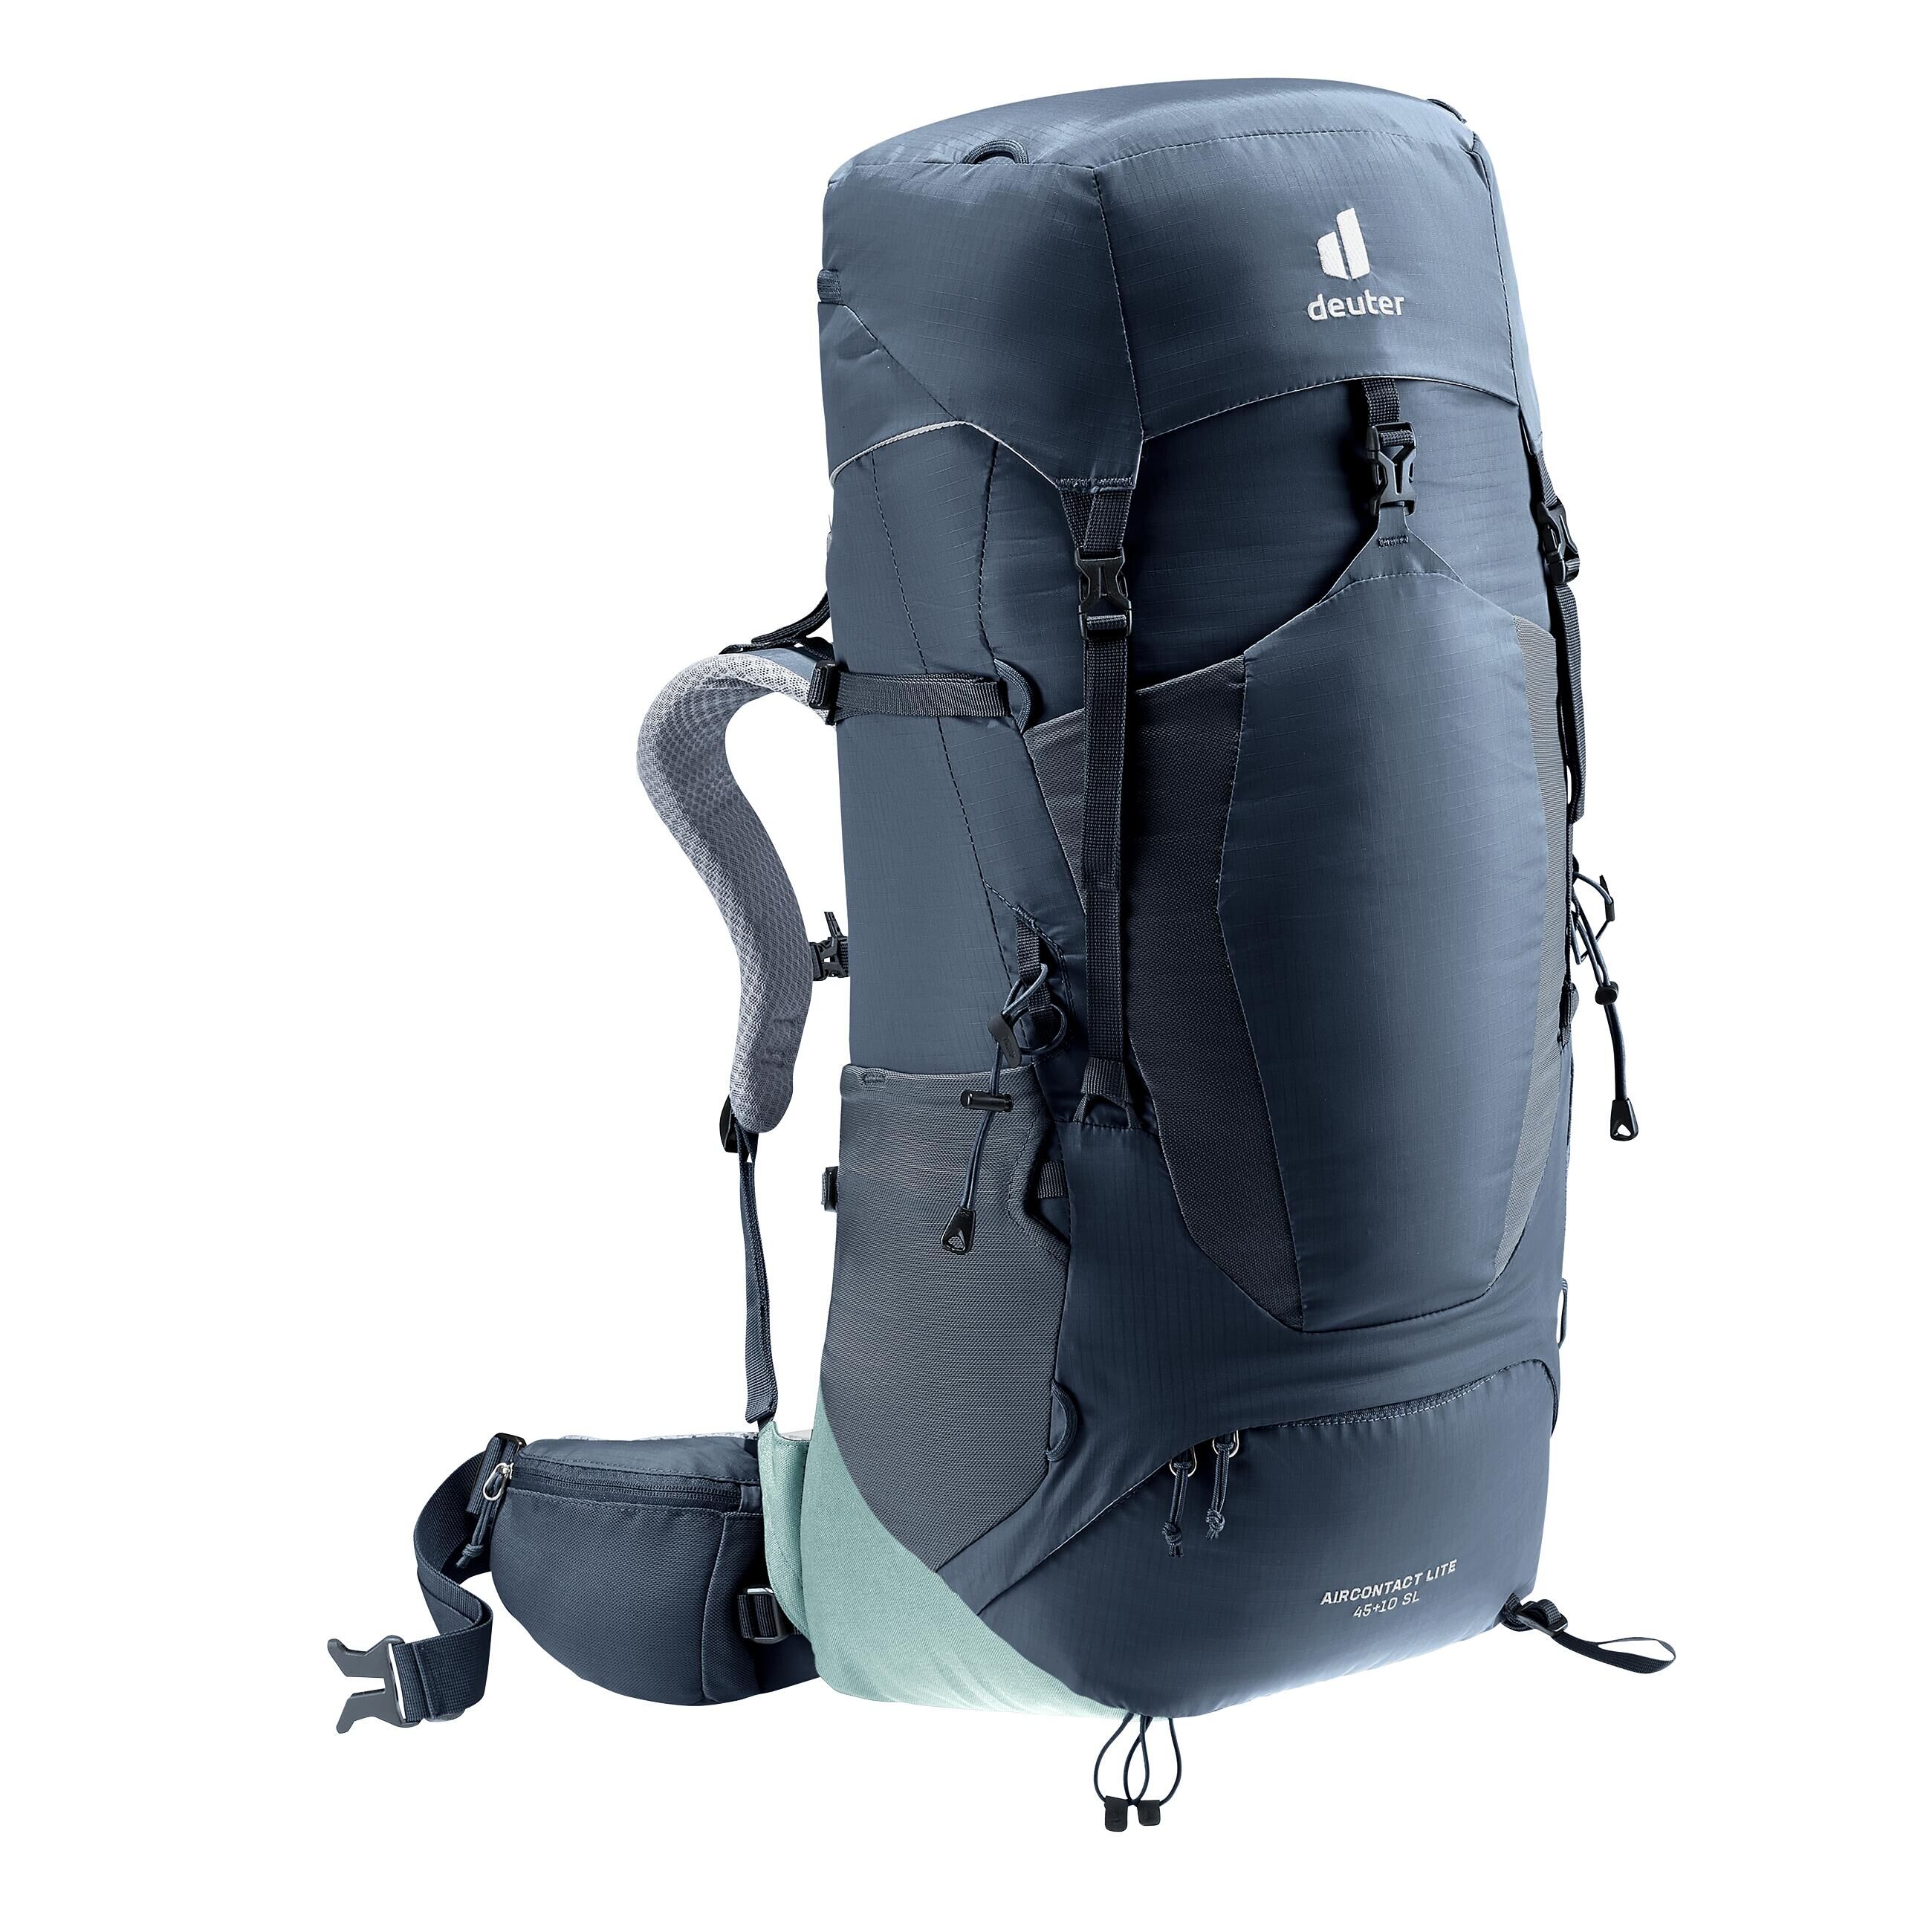 DEUTER Women's Trekking Backpack 45+10L - DEUTER AIR CONTACT LITE